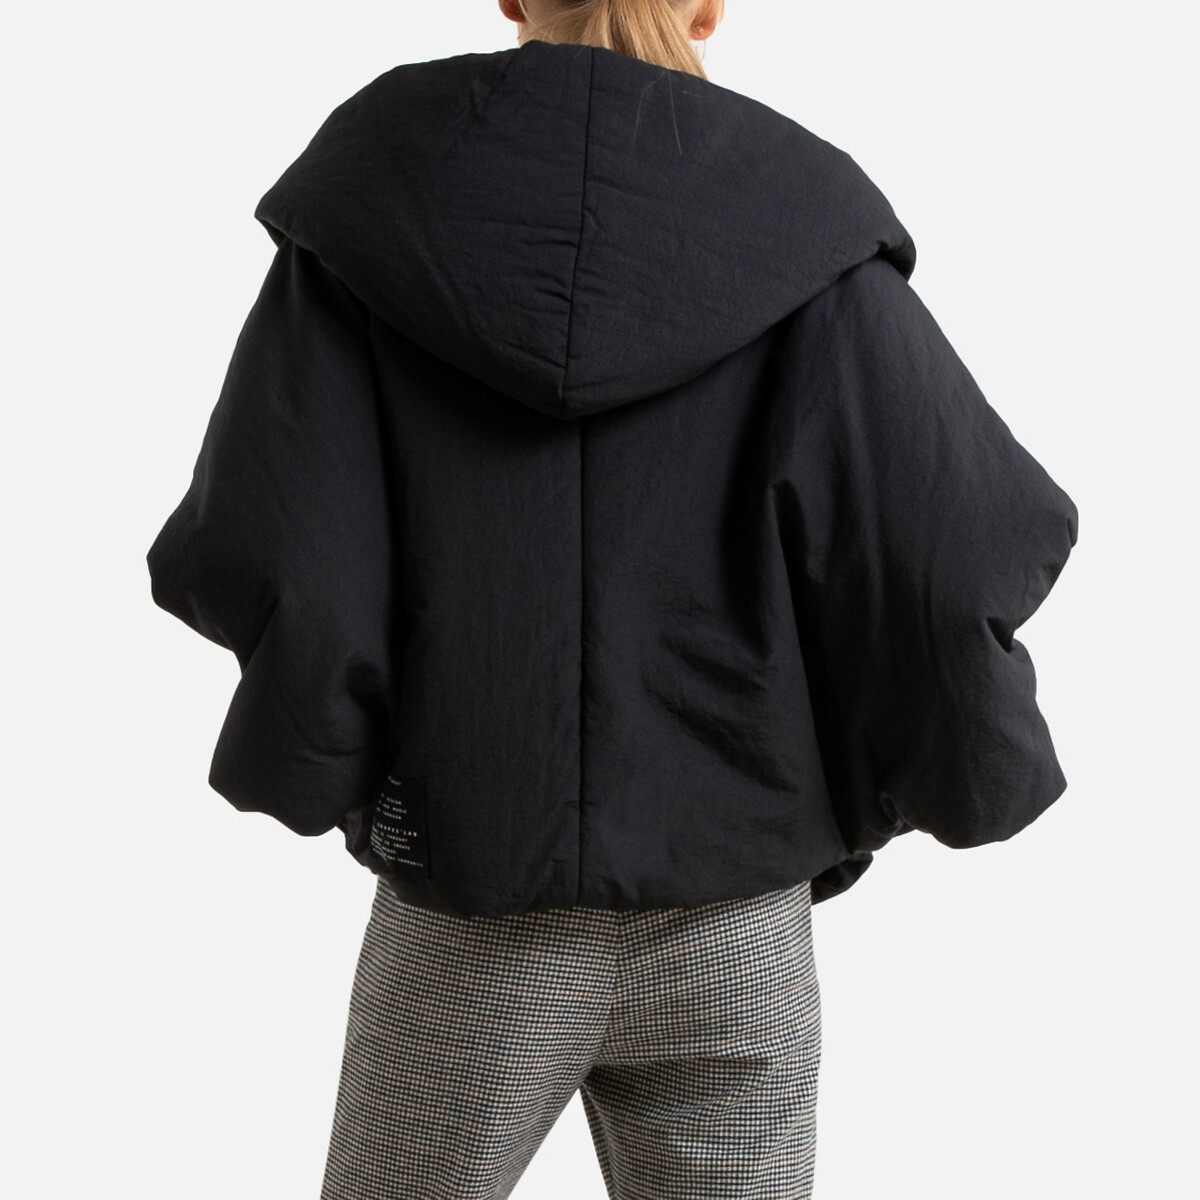 Куртка LaRedoute Стеганая короткая широкого покроя с капюшоном 40 (FR) - 46 (RUS) черный, размер 40 (FR) - 46 (RUS) Стеганая короткая широкого покроя с капюшоном 40 (FR) - 46 (RUS) черный - фото 4